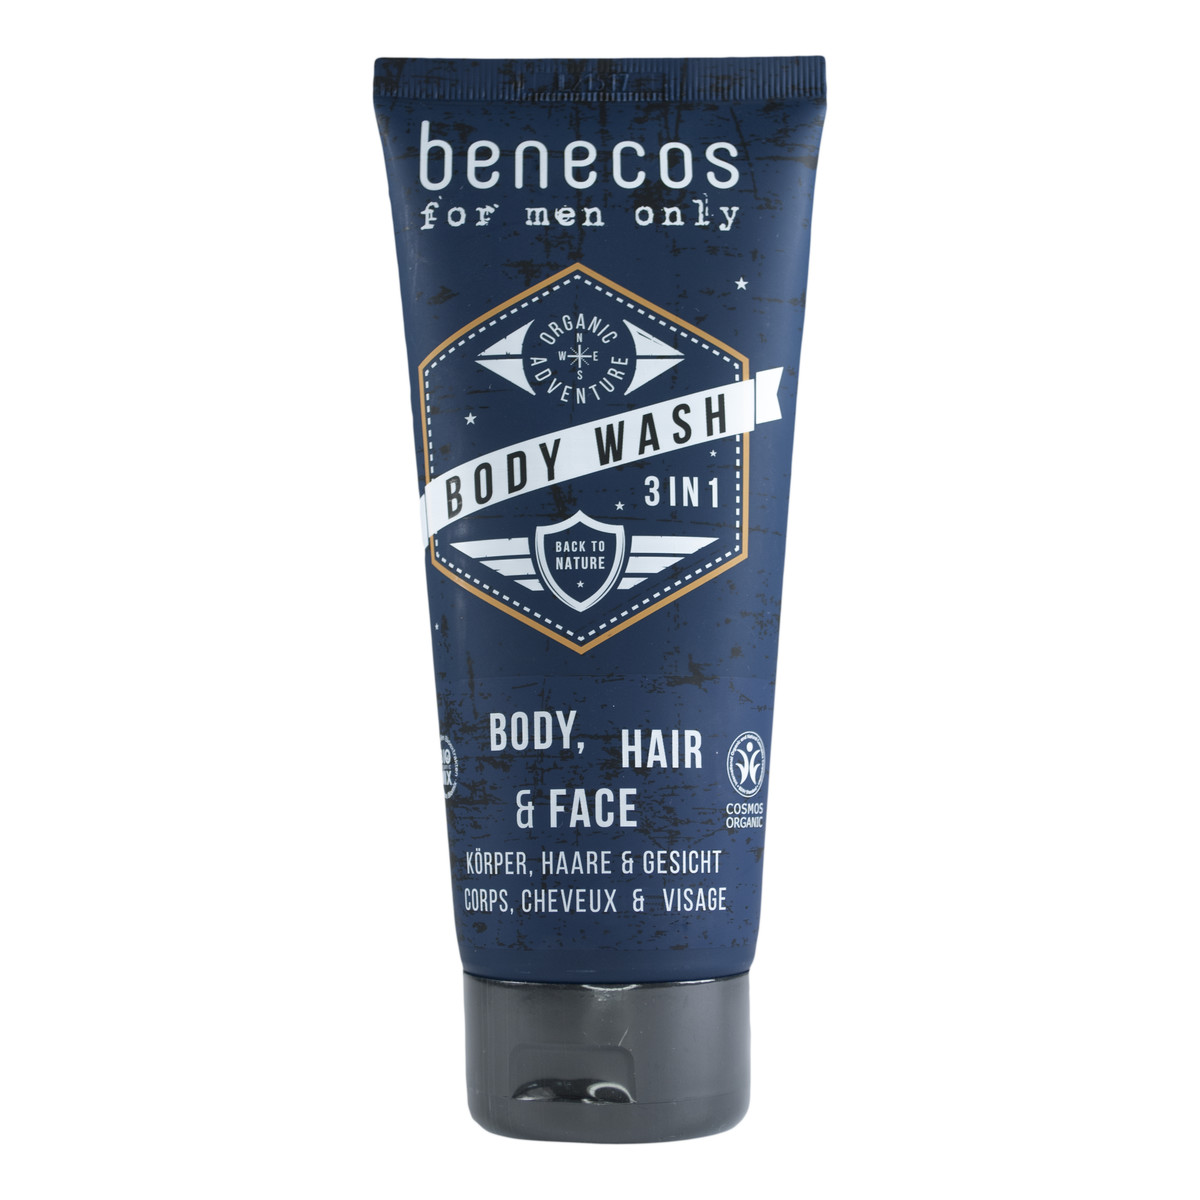 Benecos For men only - 3w1 Naturalny odświeżający żel do mycia ciała, twarzy i włosów 200ml